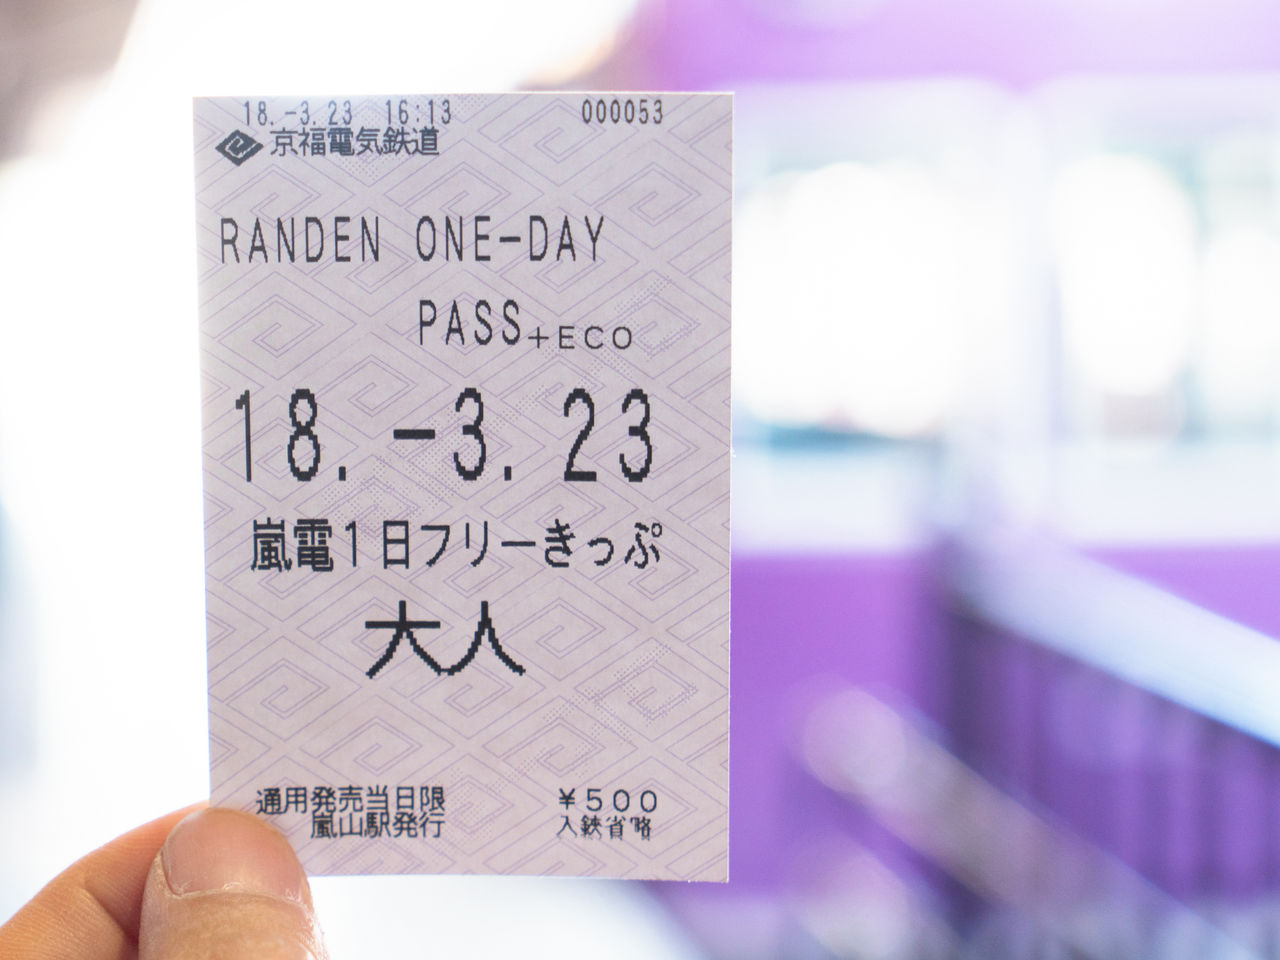 Le pass illimité permet de voyager toute une journée sur la ligne Randen.